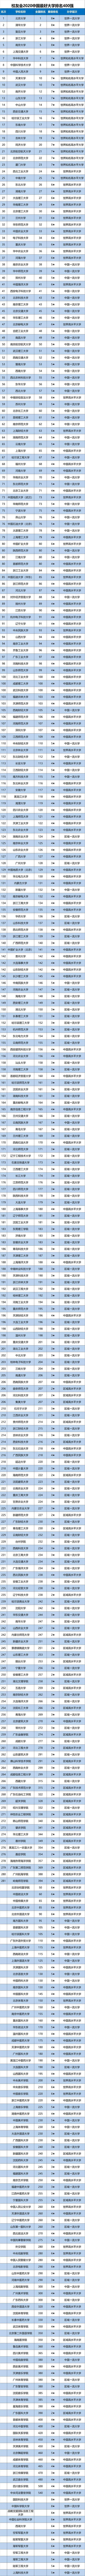 2020高校排名一览表_最新发布2020年中国最好大学排名,2020年中国最好大学